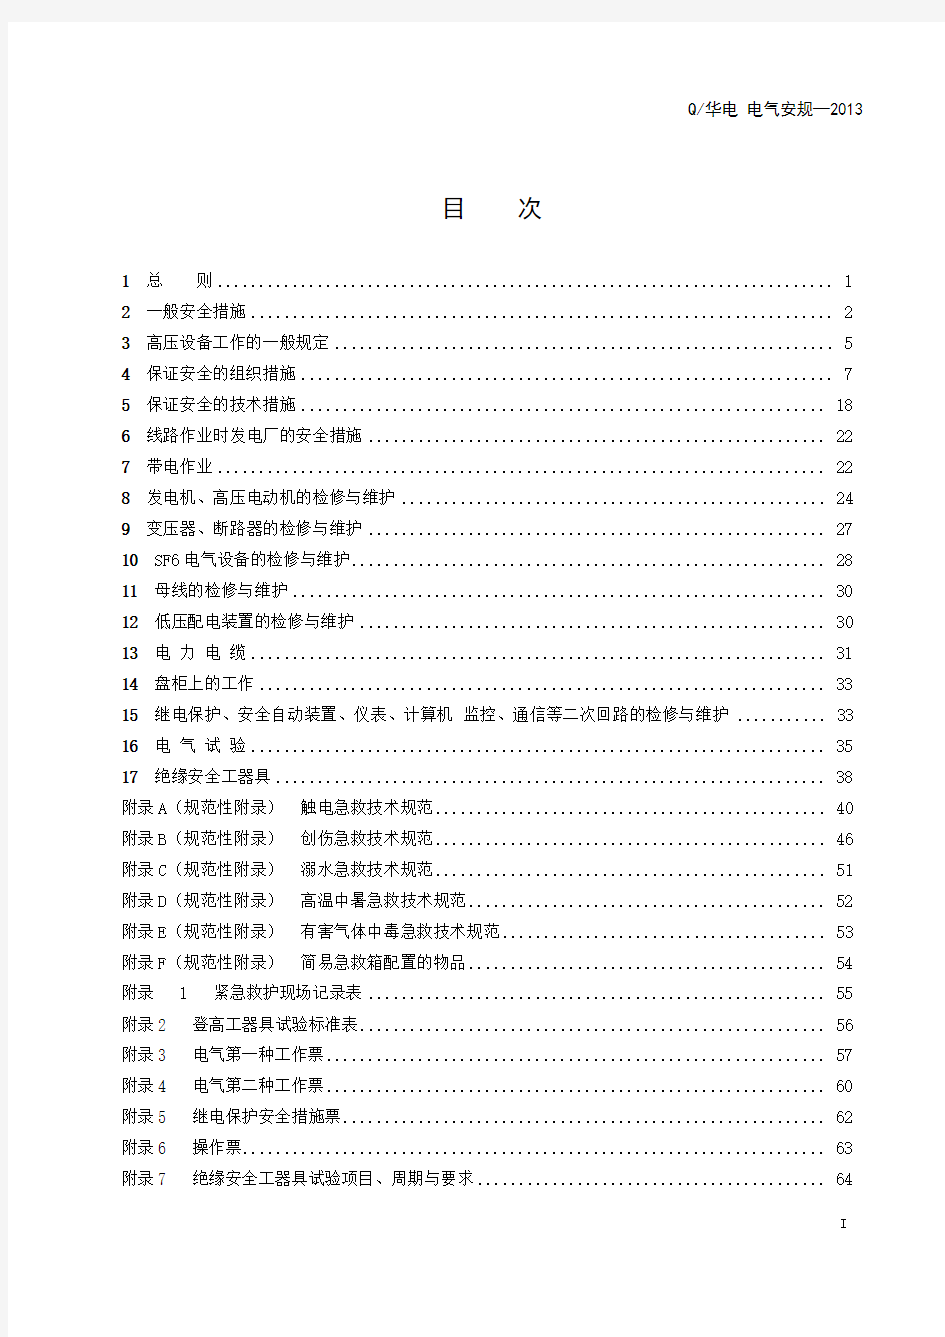 中国华电集团《电力安全工作规程》(电气部分)2013